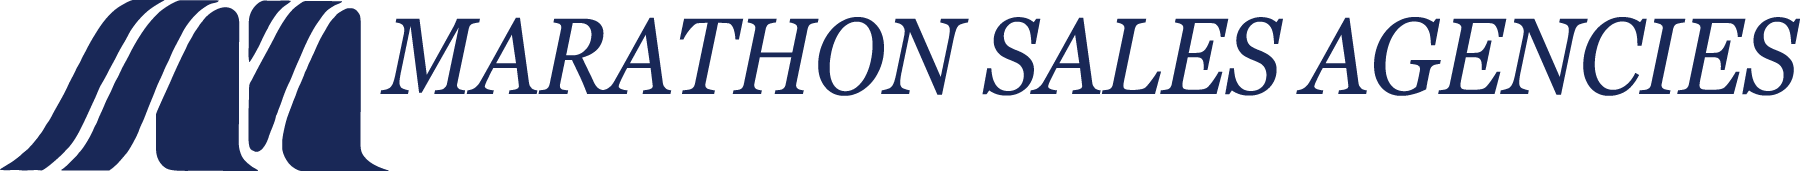 Marathon Sales Agencies logo